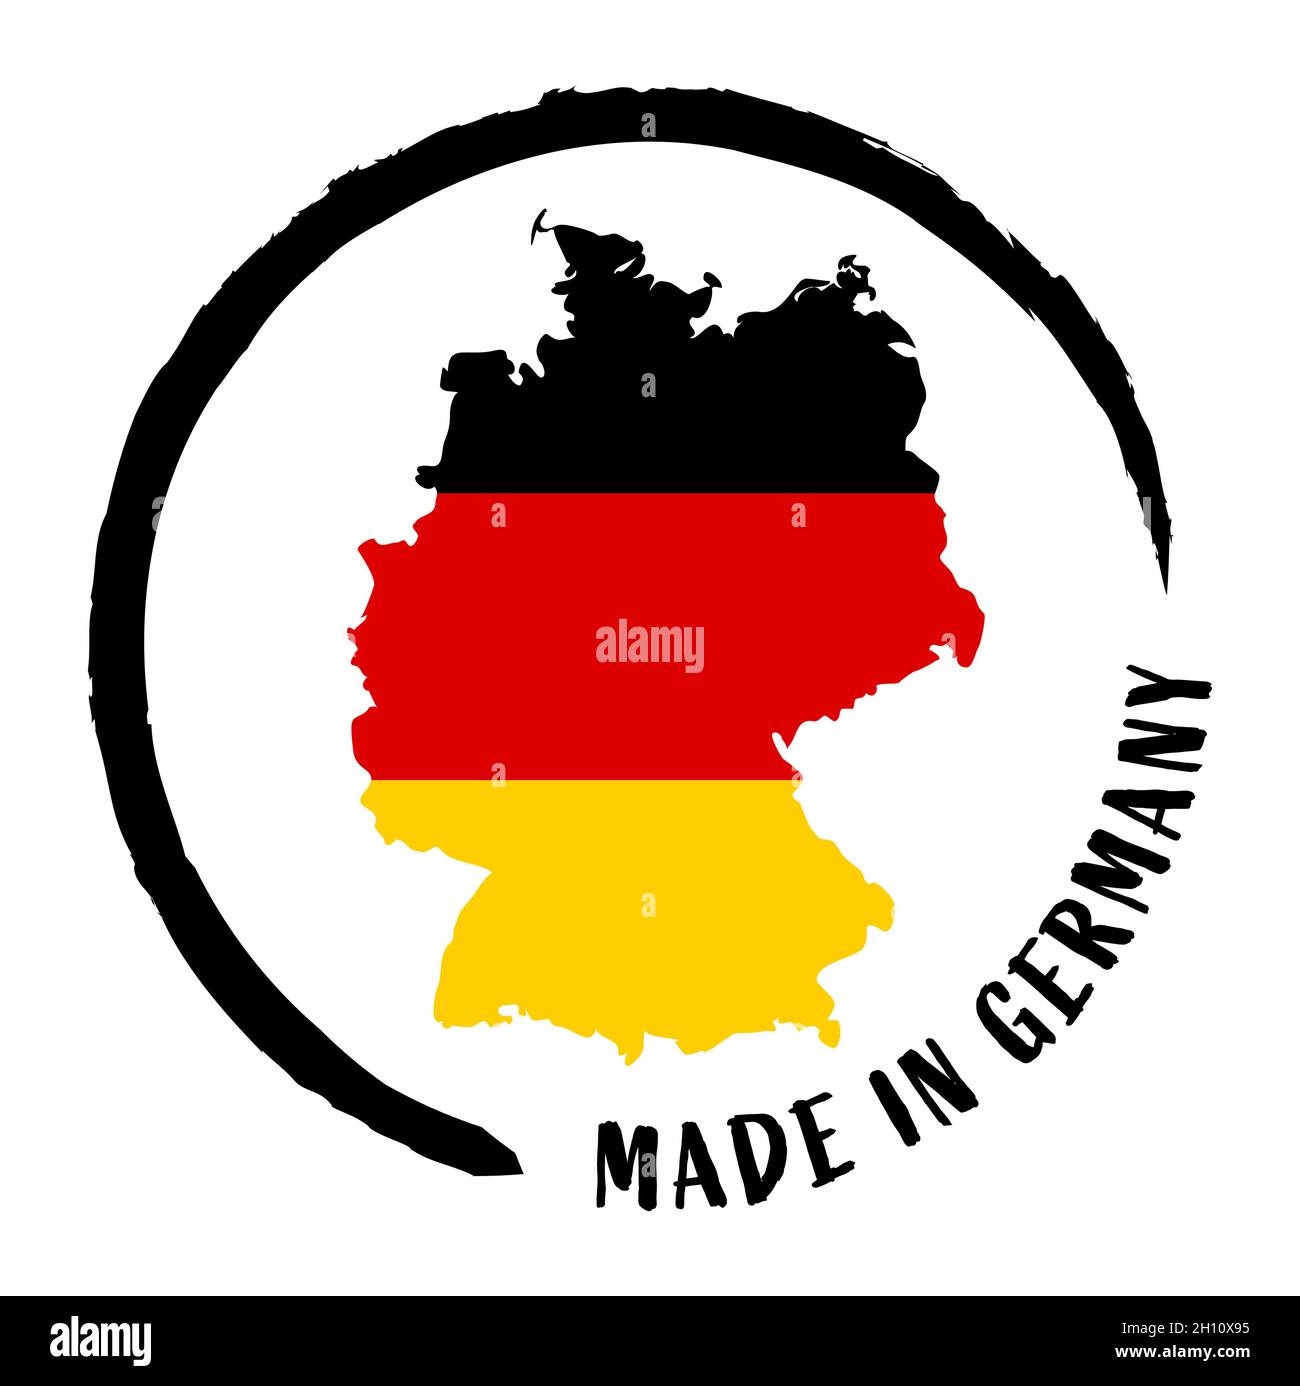 ازدحام، اكتظاظ، احتقان حراري ابن  eps vector file with business stamp, round patch ' Made in Germany ' with  silhouette of germany and national colors Stock Vector Image & Art - Alamy